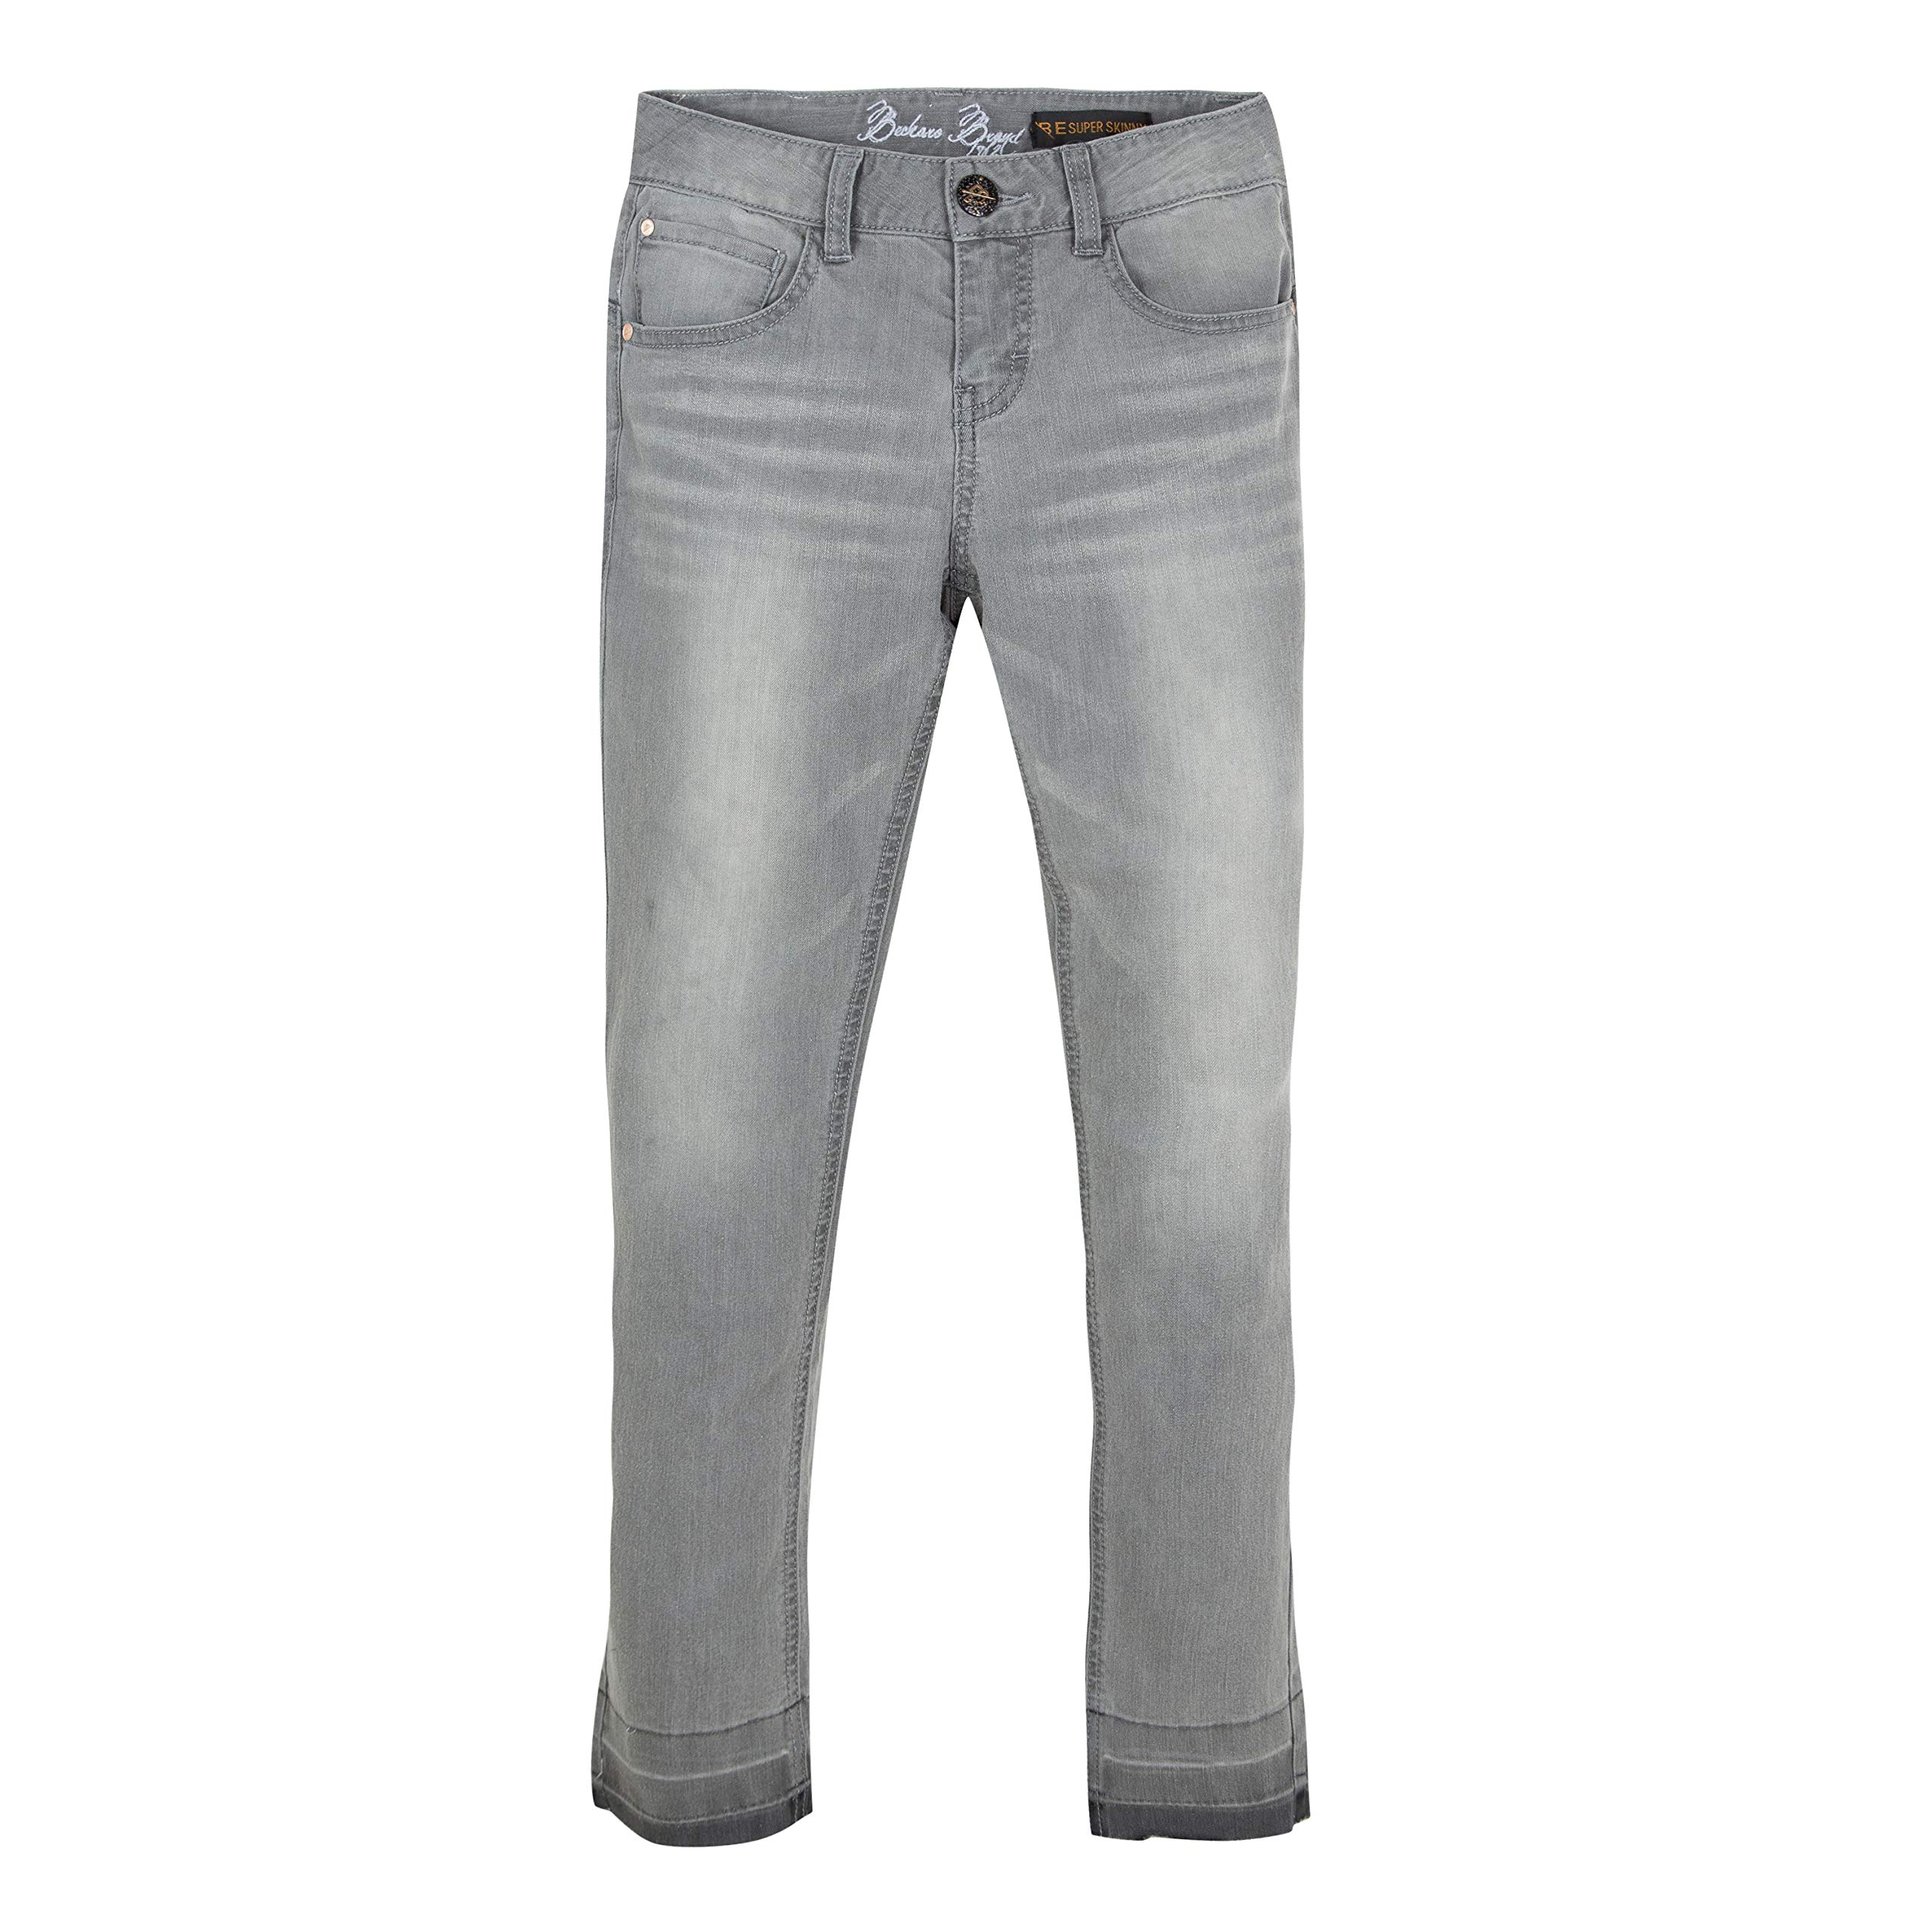 B-KARO Mädchen 3n22116 21 Trousers Hose, Grau (Light Grey 21), 8 Jahre (Herstellergröße: 8A)